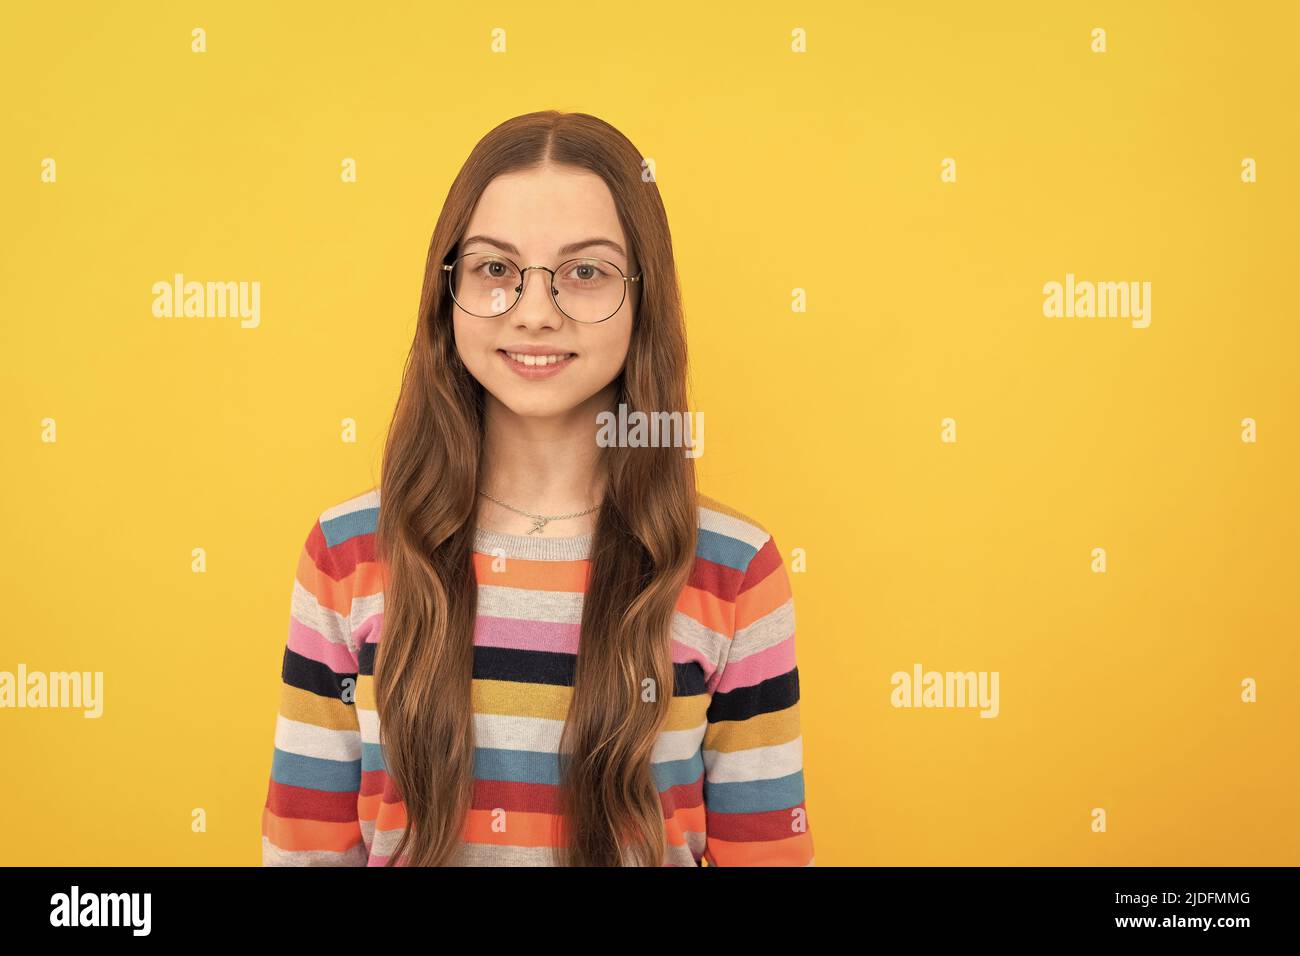 smiling schoolgirl nerd child in eyeglasses for vision, school Stock Photo